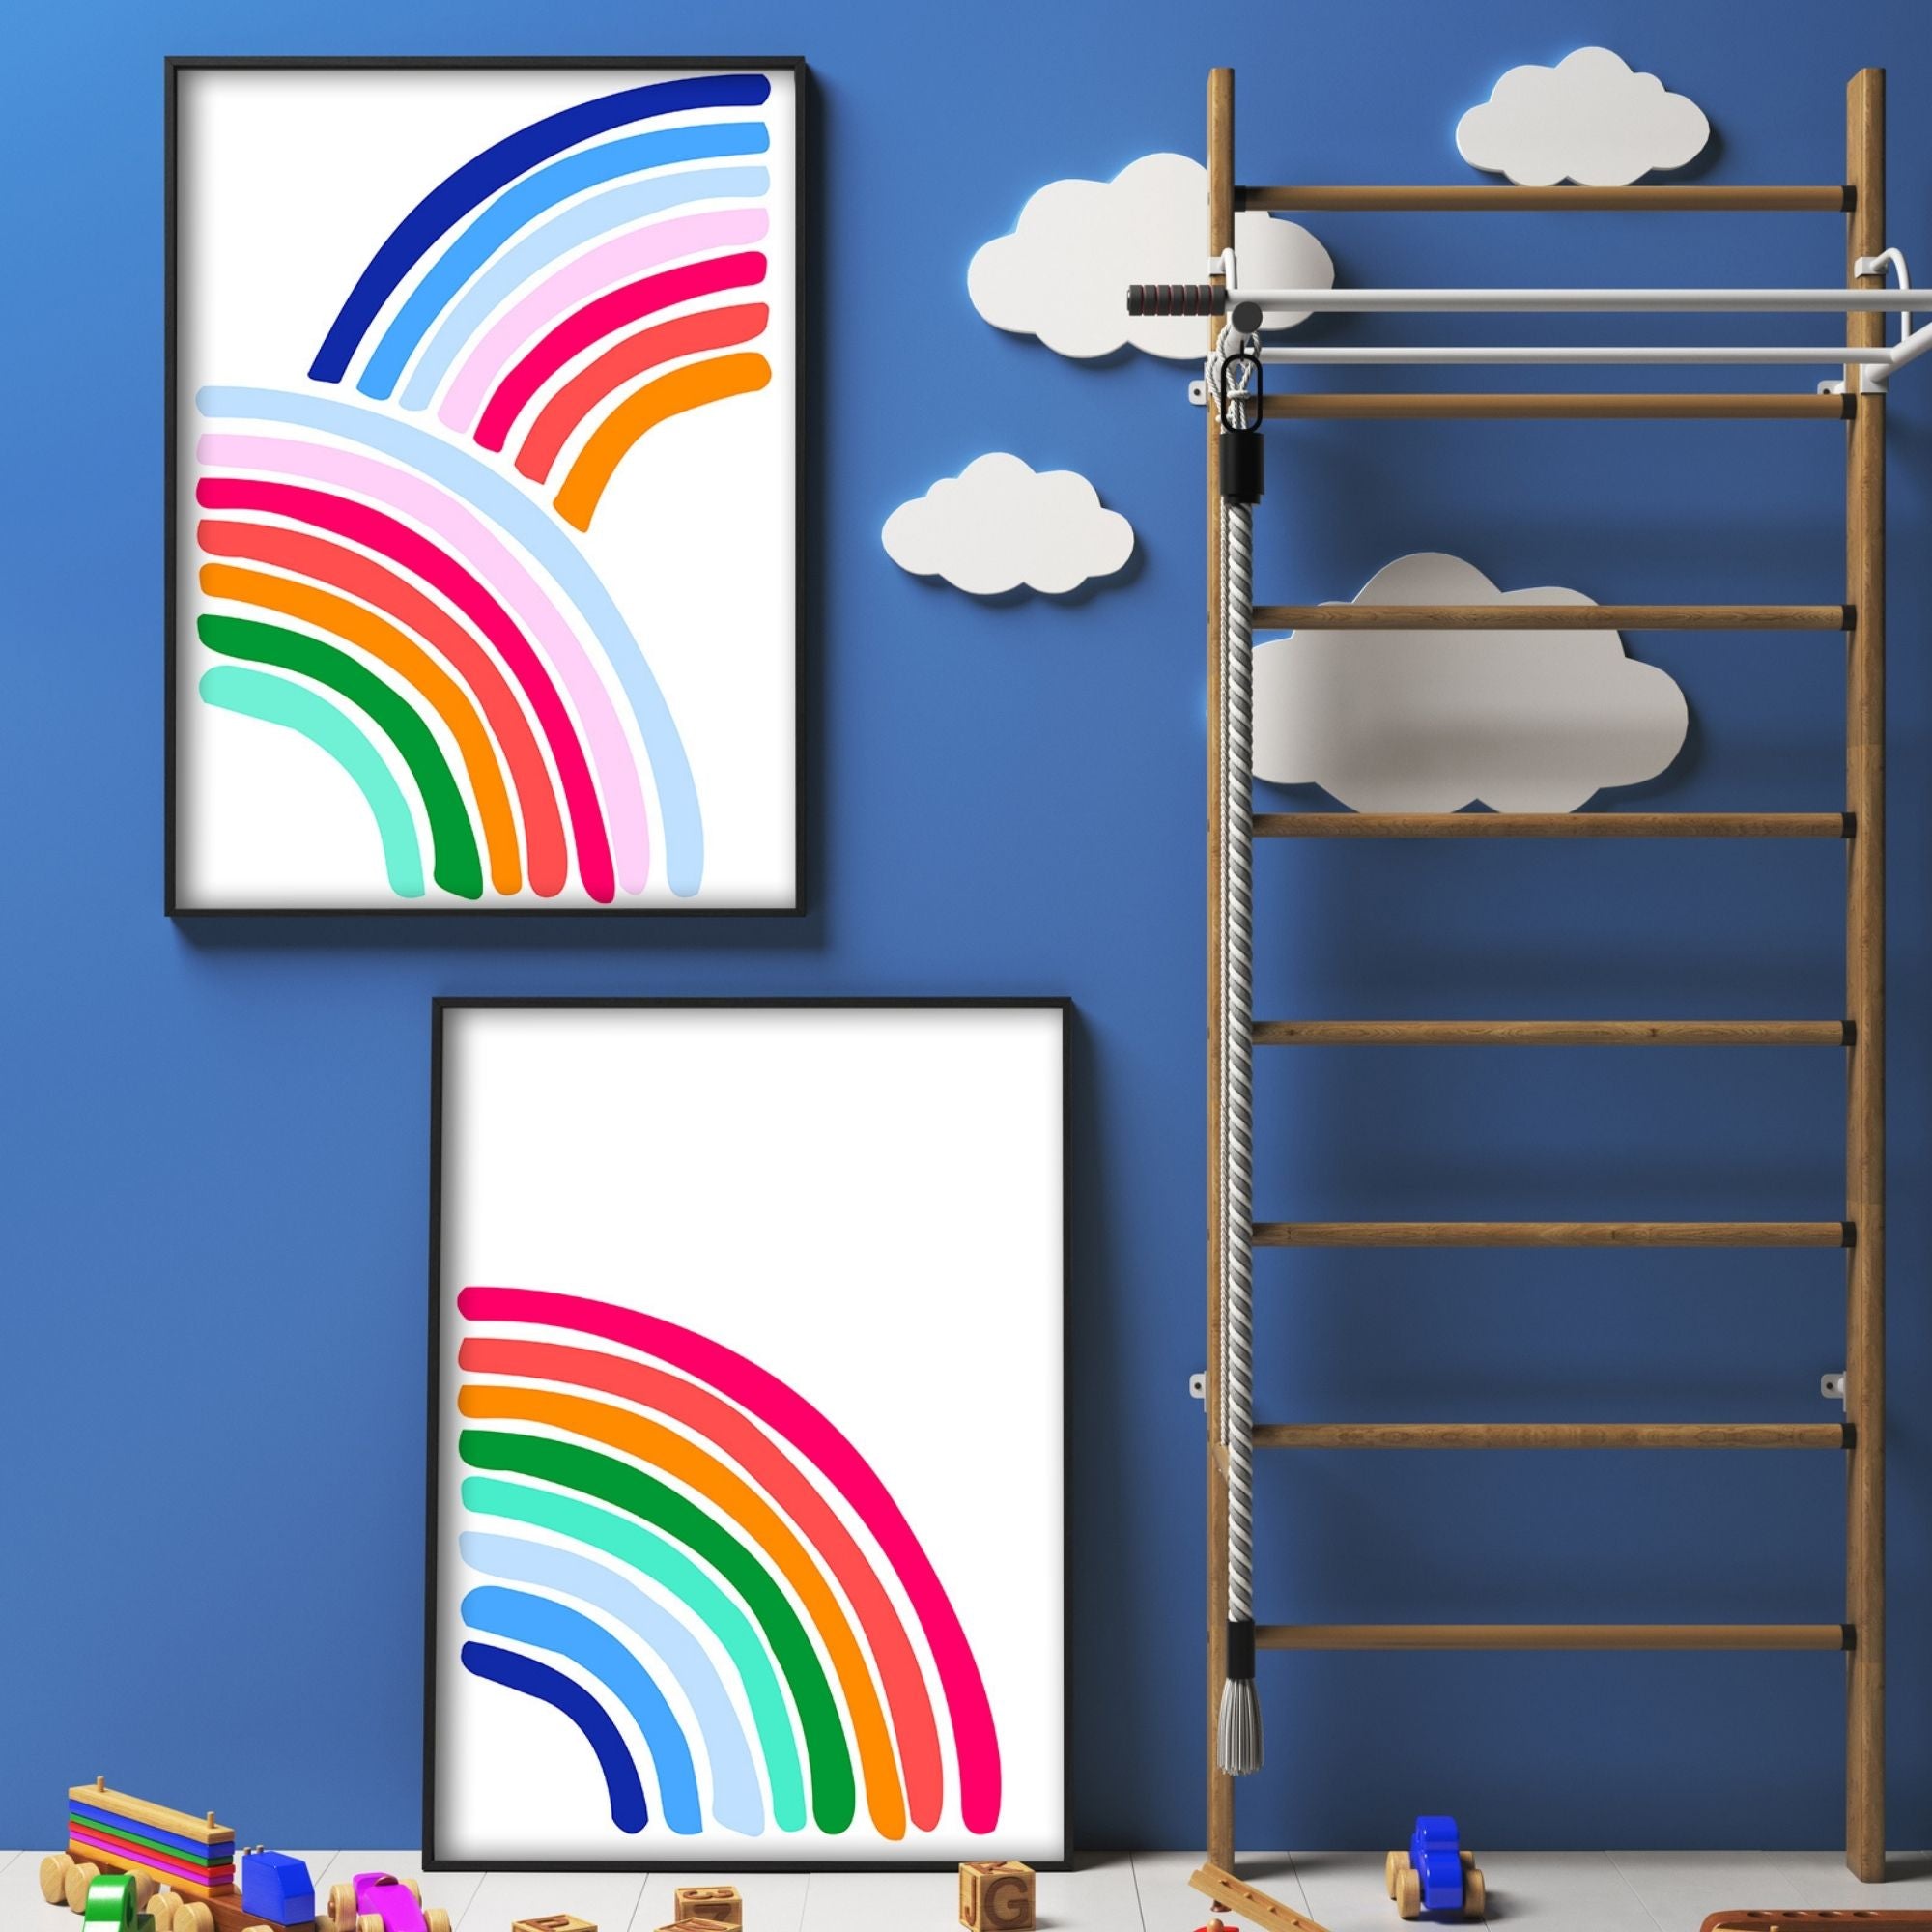 Double Rainbow Art Print-Art-Little Fish Co.